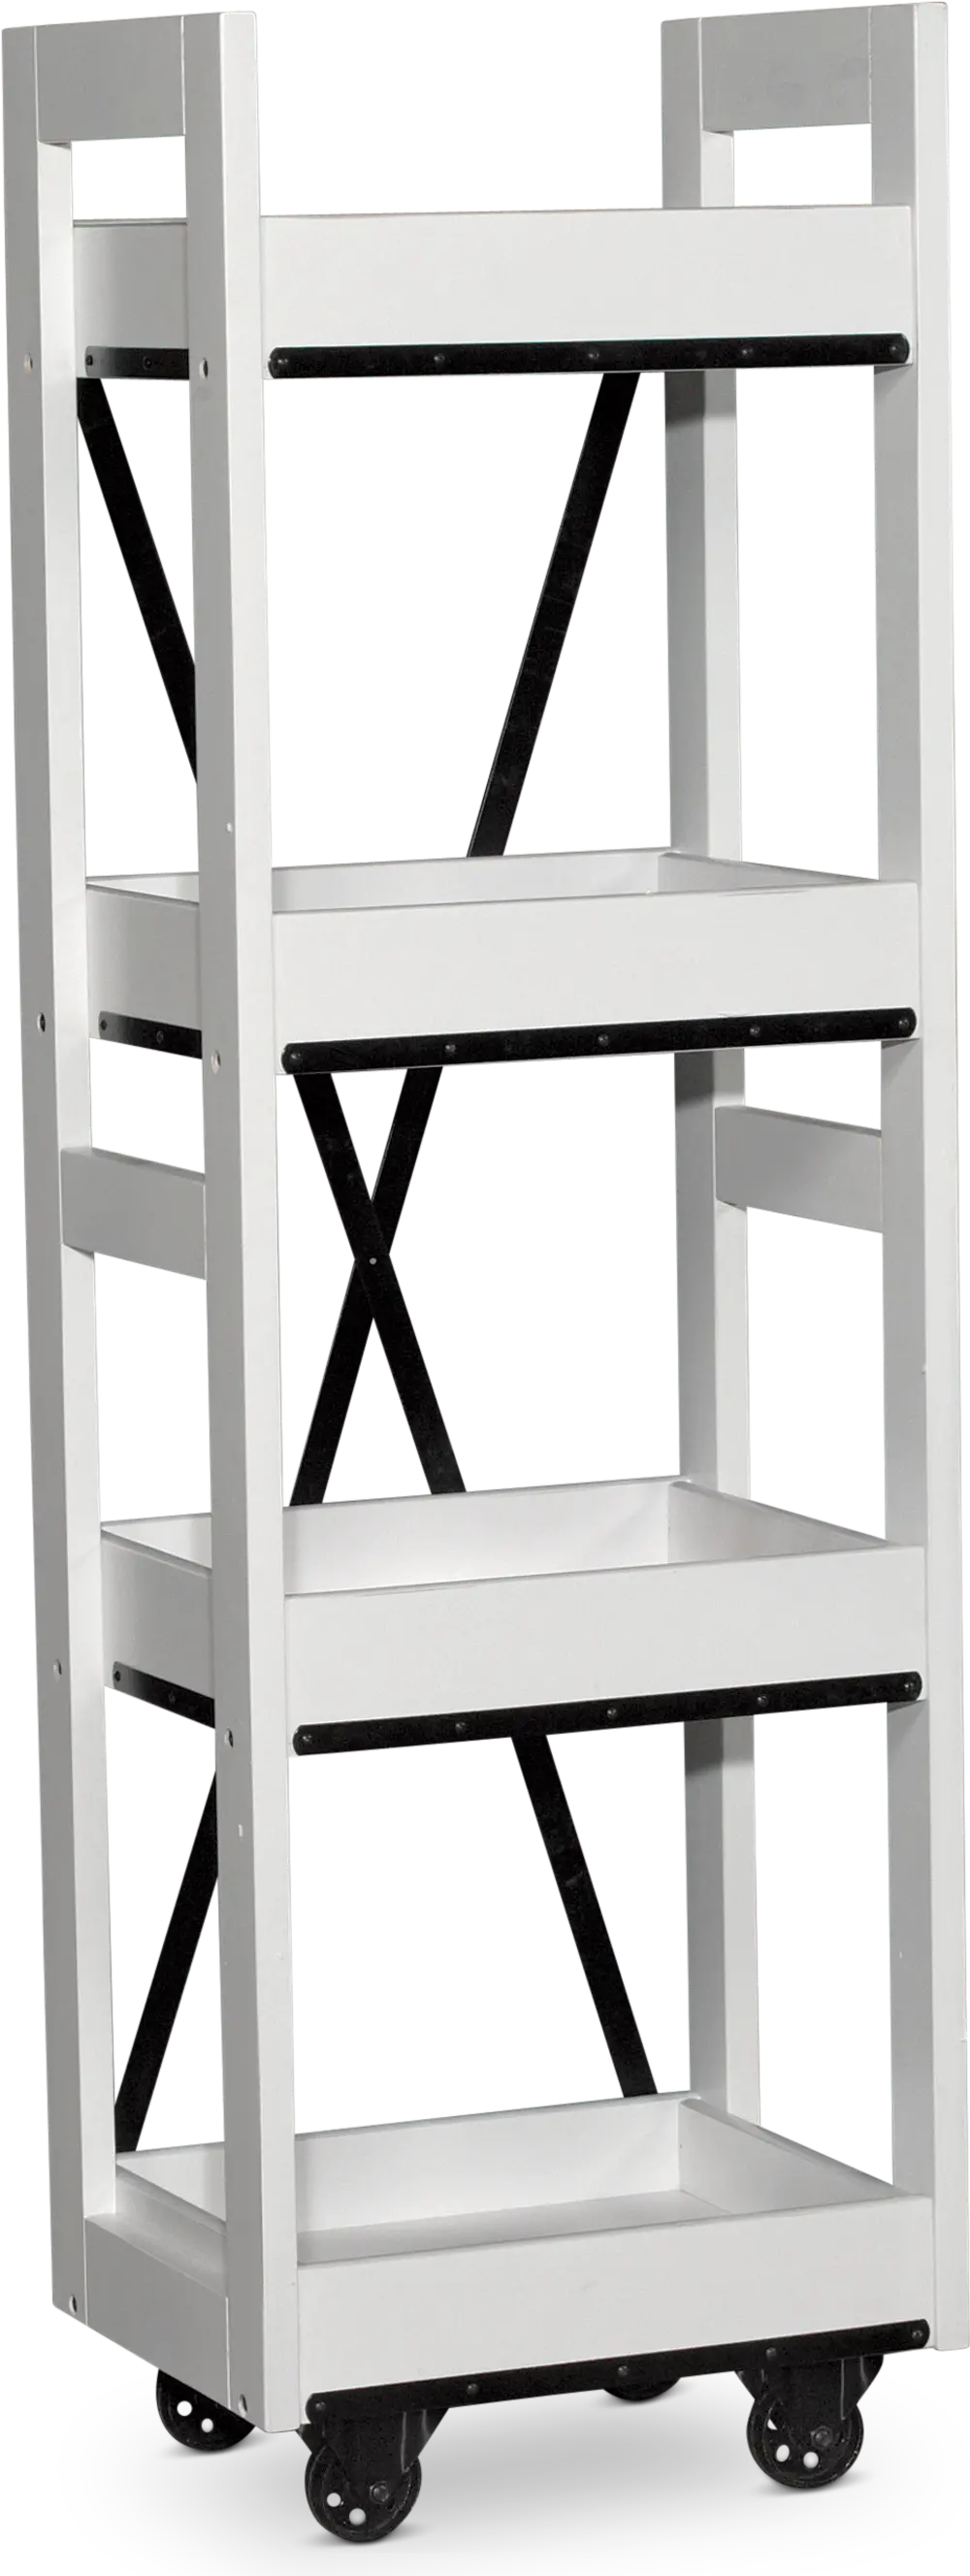 EB140AW Modern White Bookcase - Urban Options-1